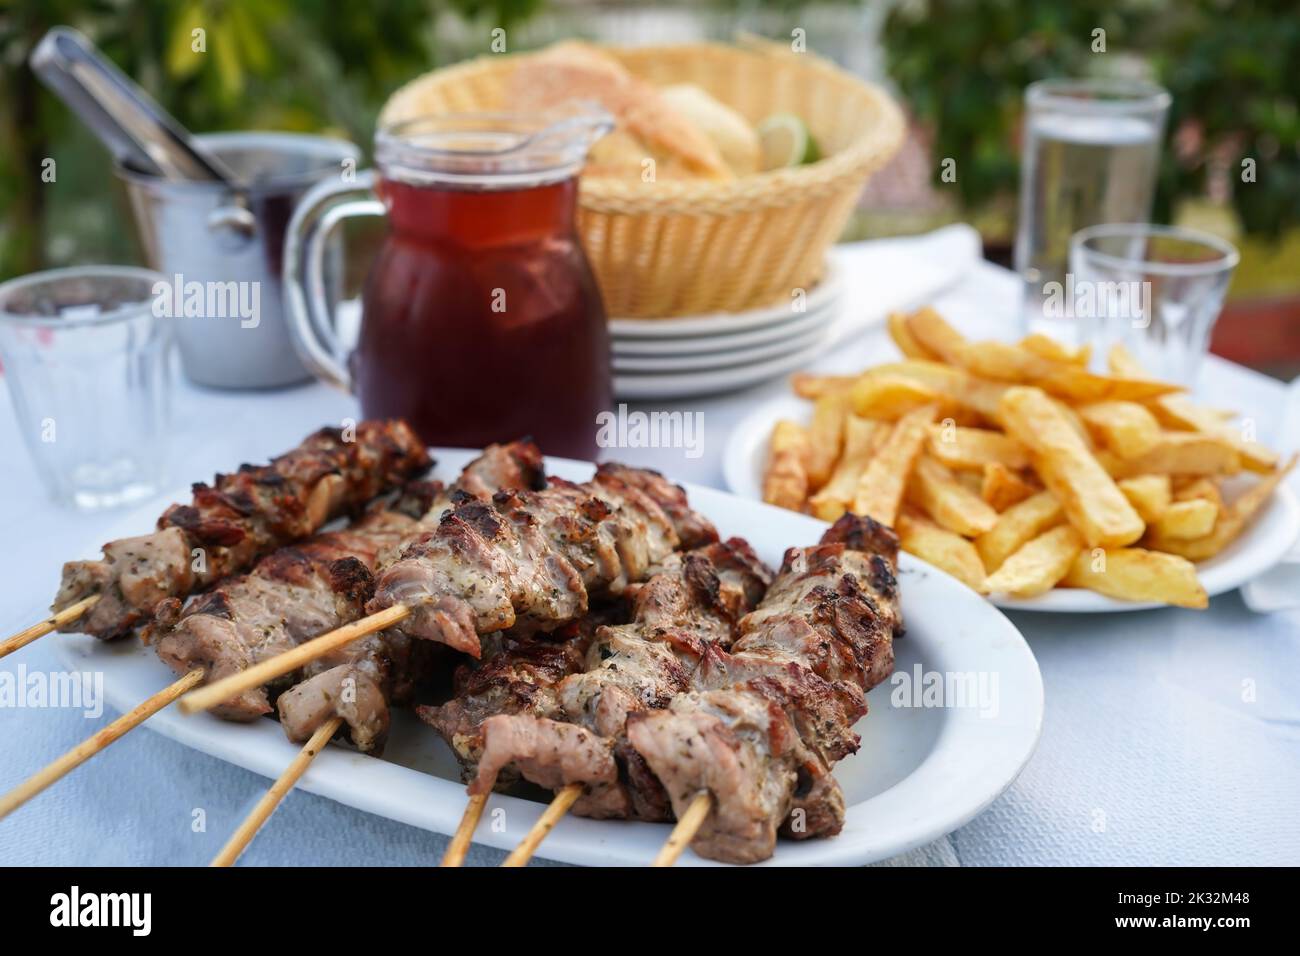 Selektiver Fokus auf Fleisch mit typischer griechischer Tischanordnung, einschließlich des halben Liter-Kännchens Rotwein, gebratener Kartoffeln, Souvlaki und Brot Stockfoto